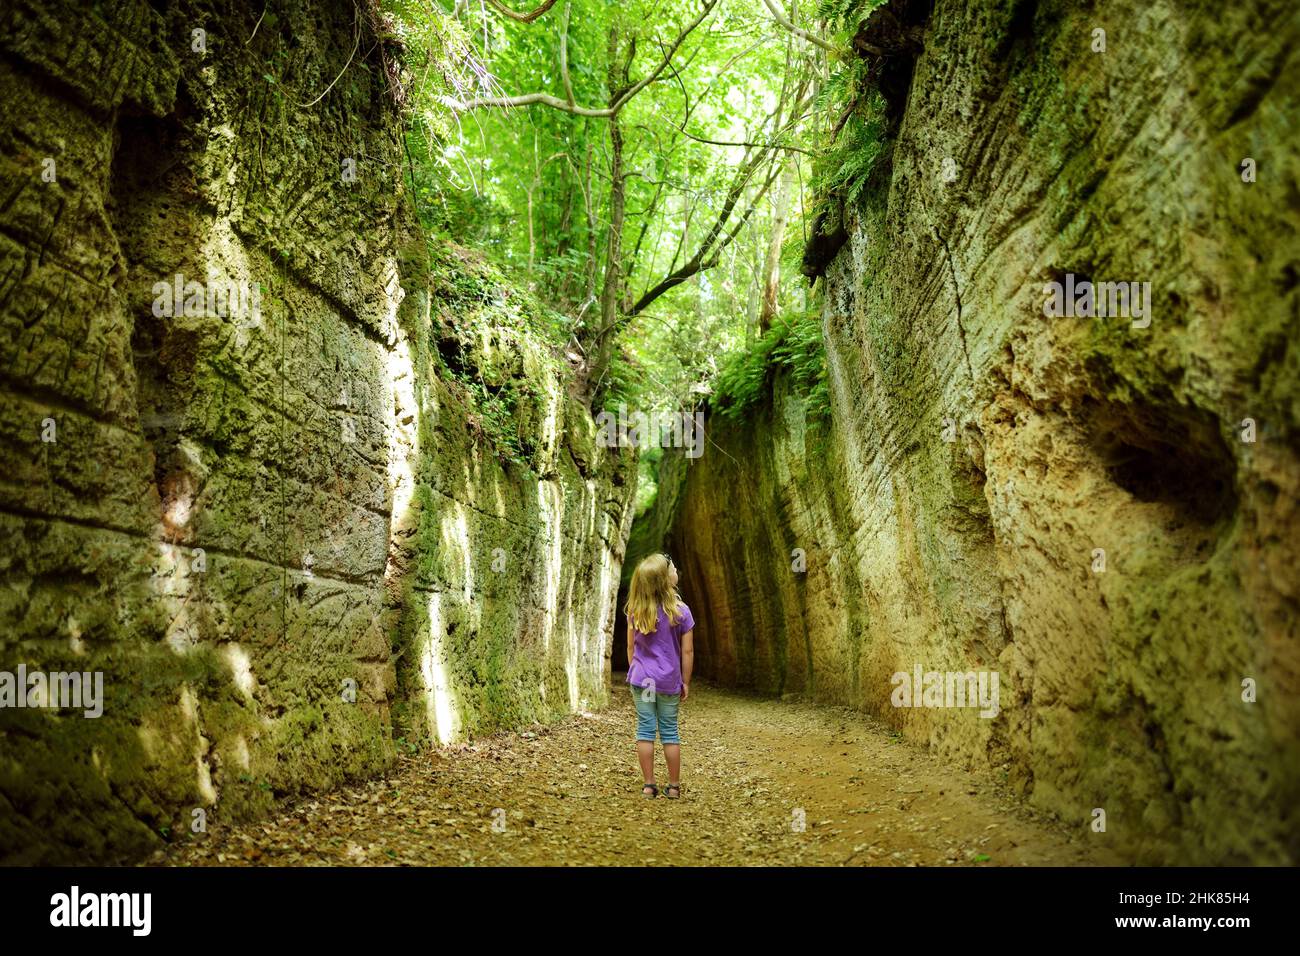 Grotta le vie etrusca (Via Cava), il sentiero che collega antiche necropoli  e diversi insediamenti nella zona tra Sovana, Sorano e Pitigliano. CIT Foto  stock - Alamy